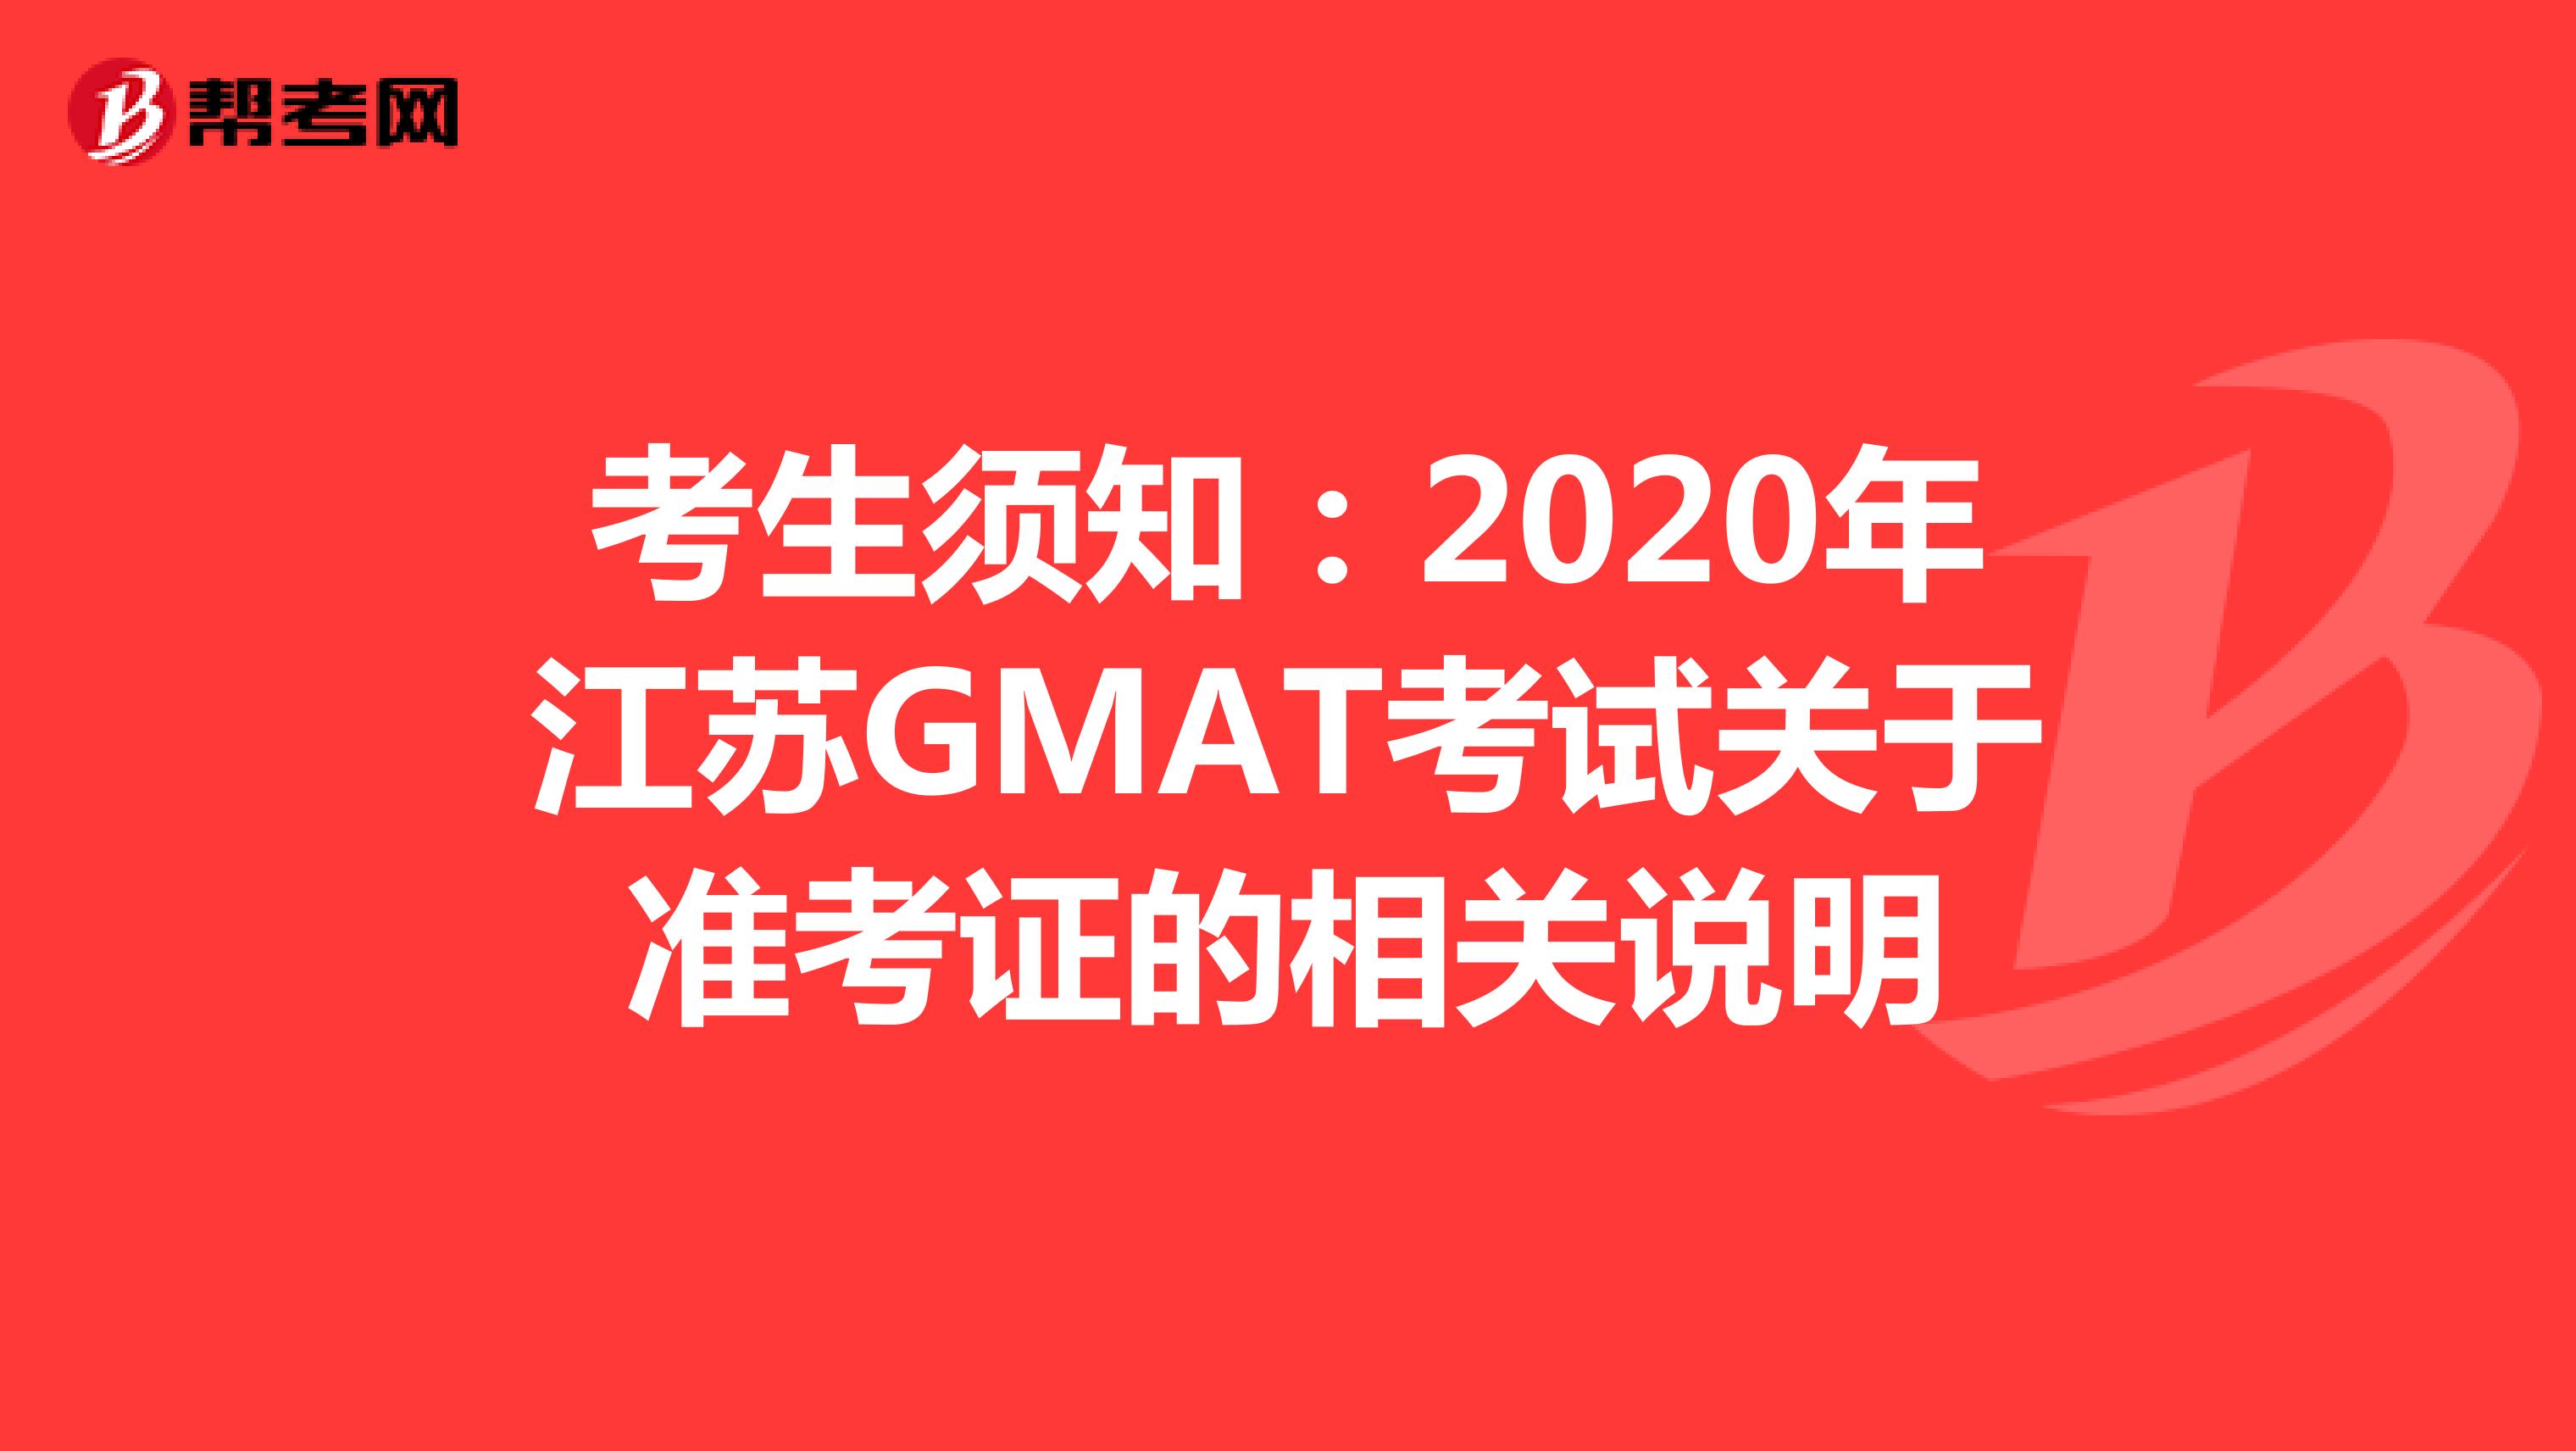 考生须知：2020年江苏GMAT考试关于准考证的相关说明